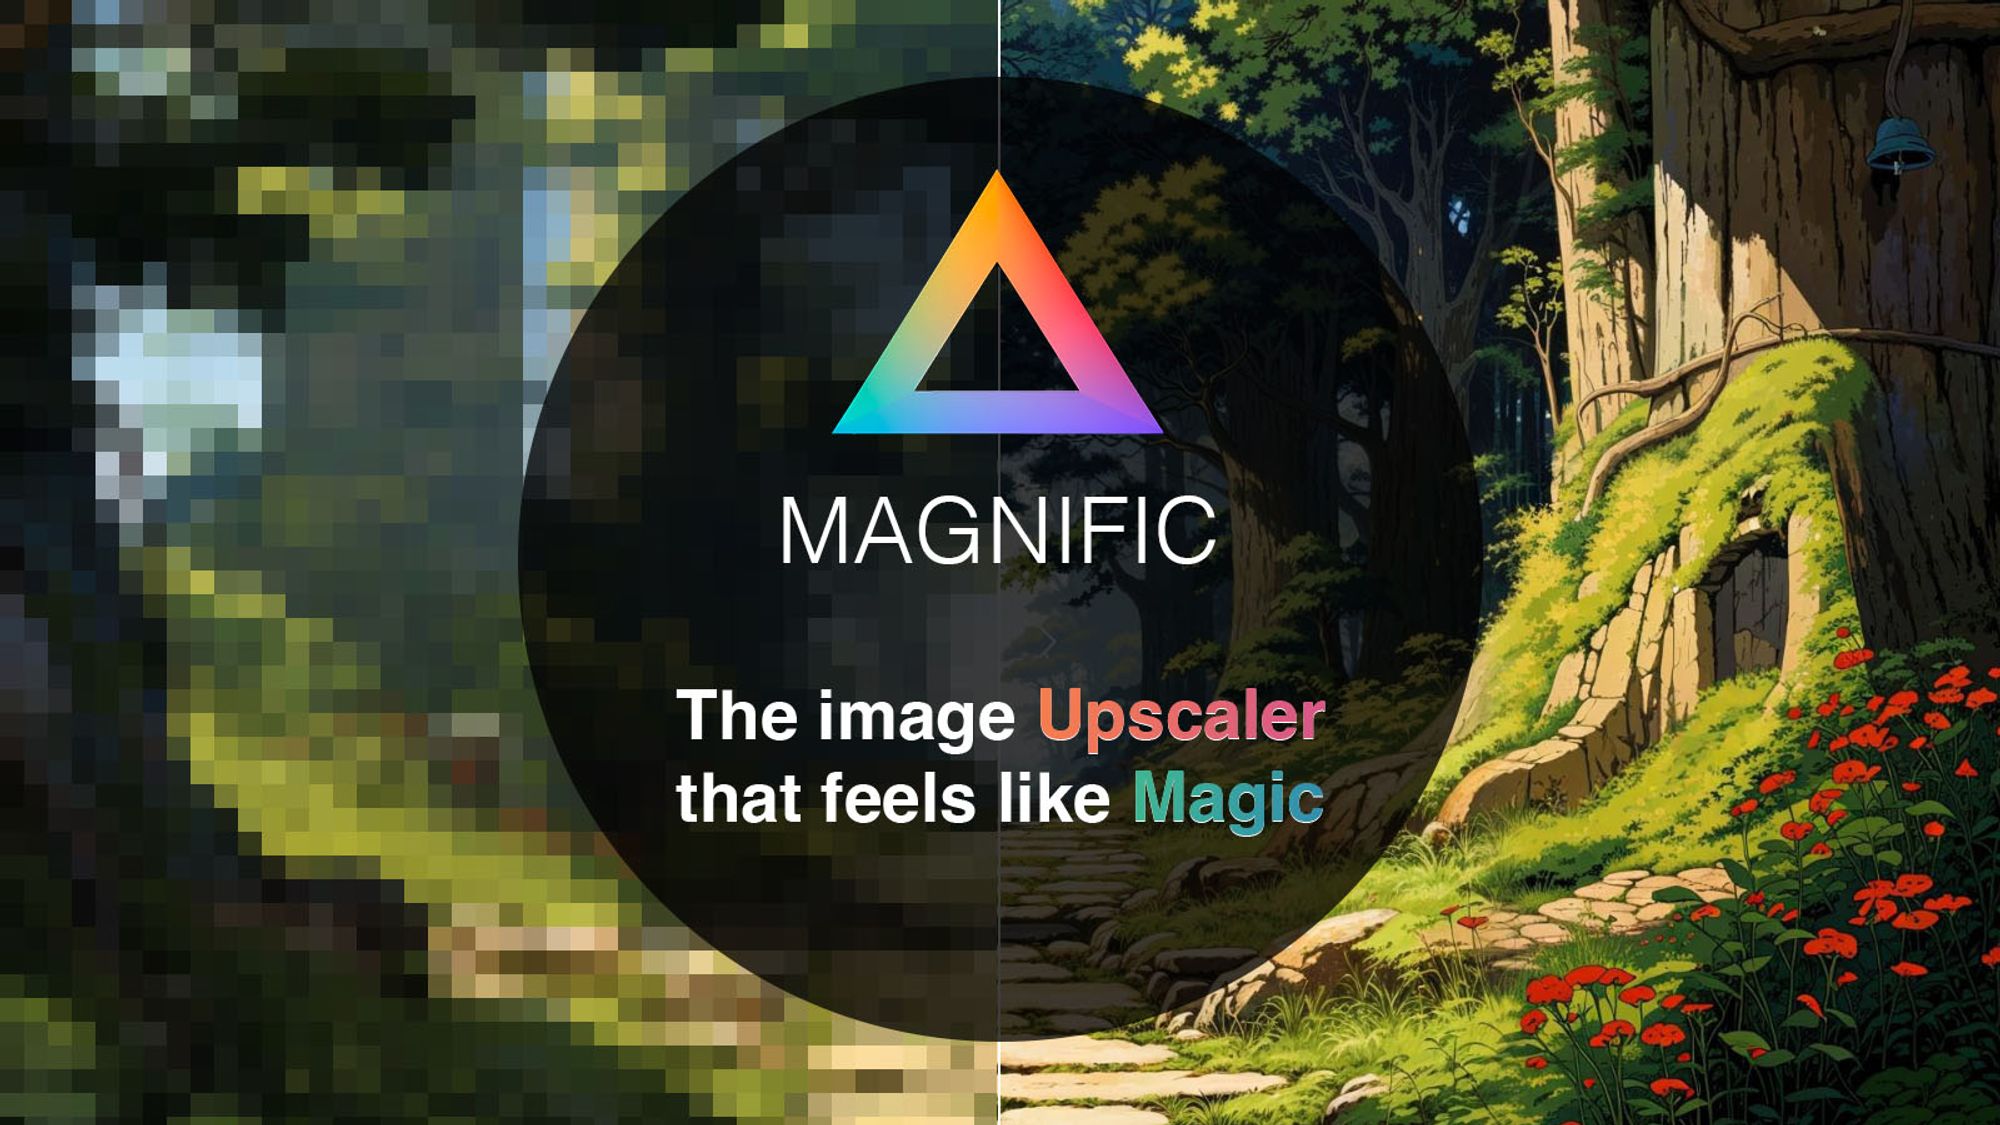 Magnific AI